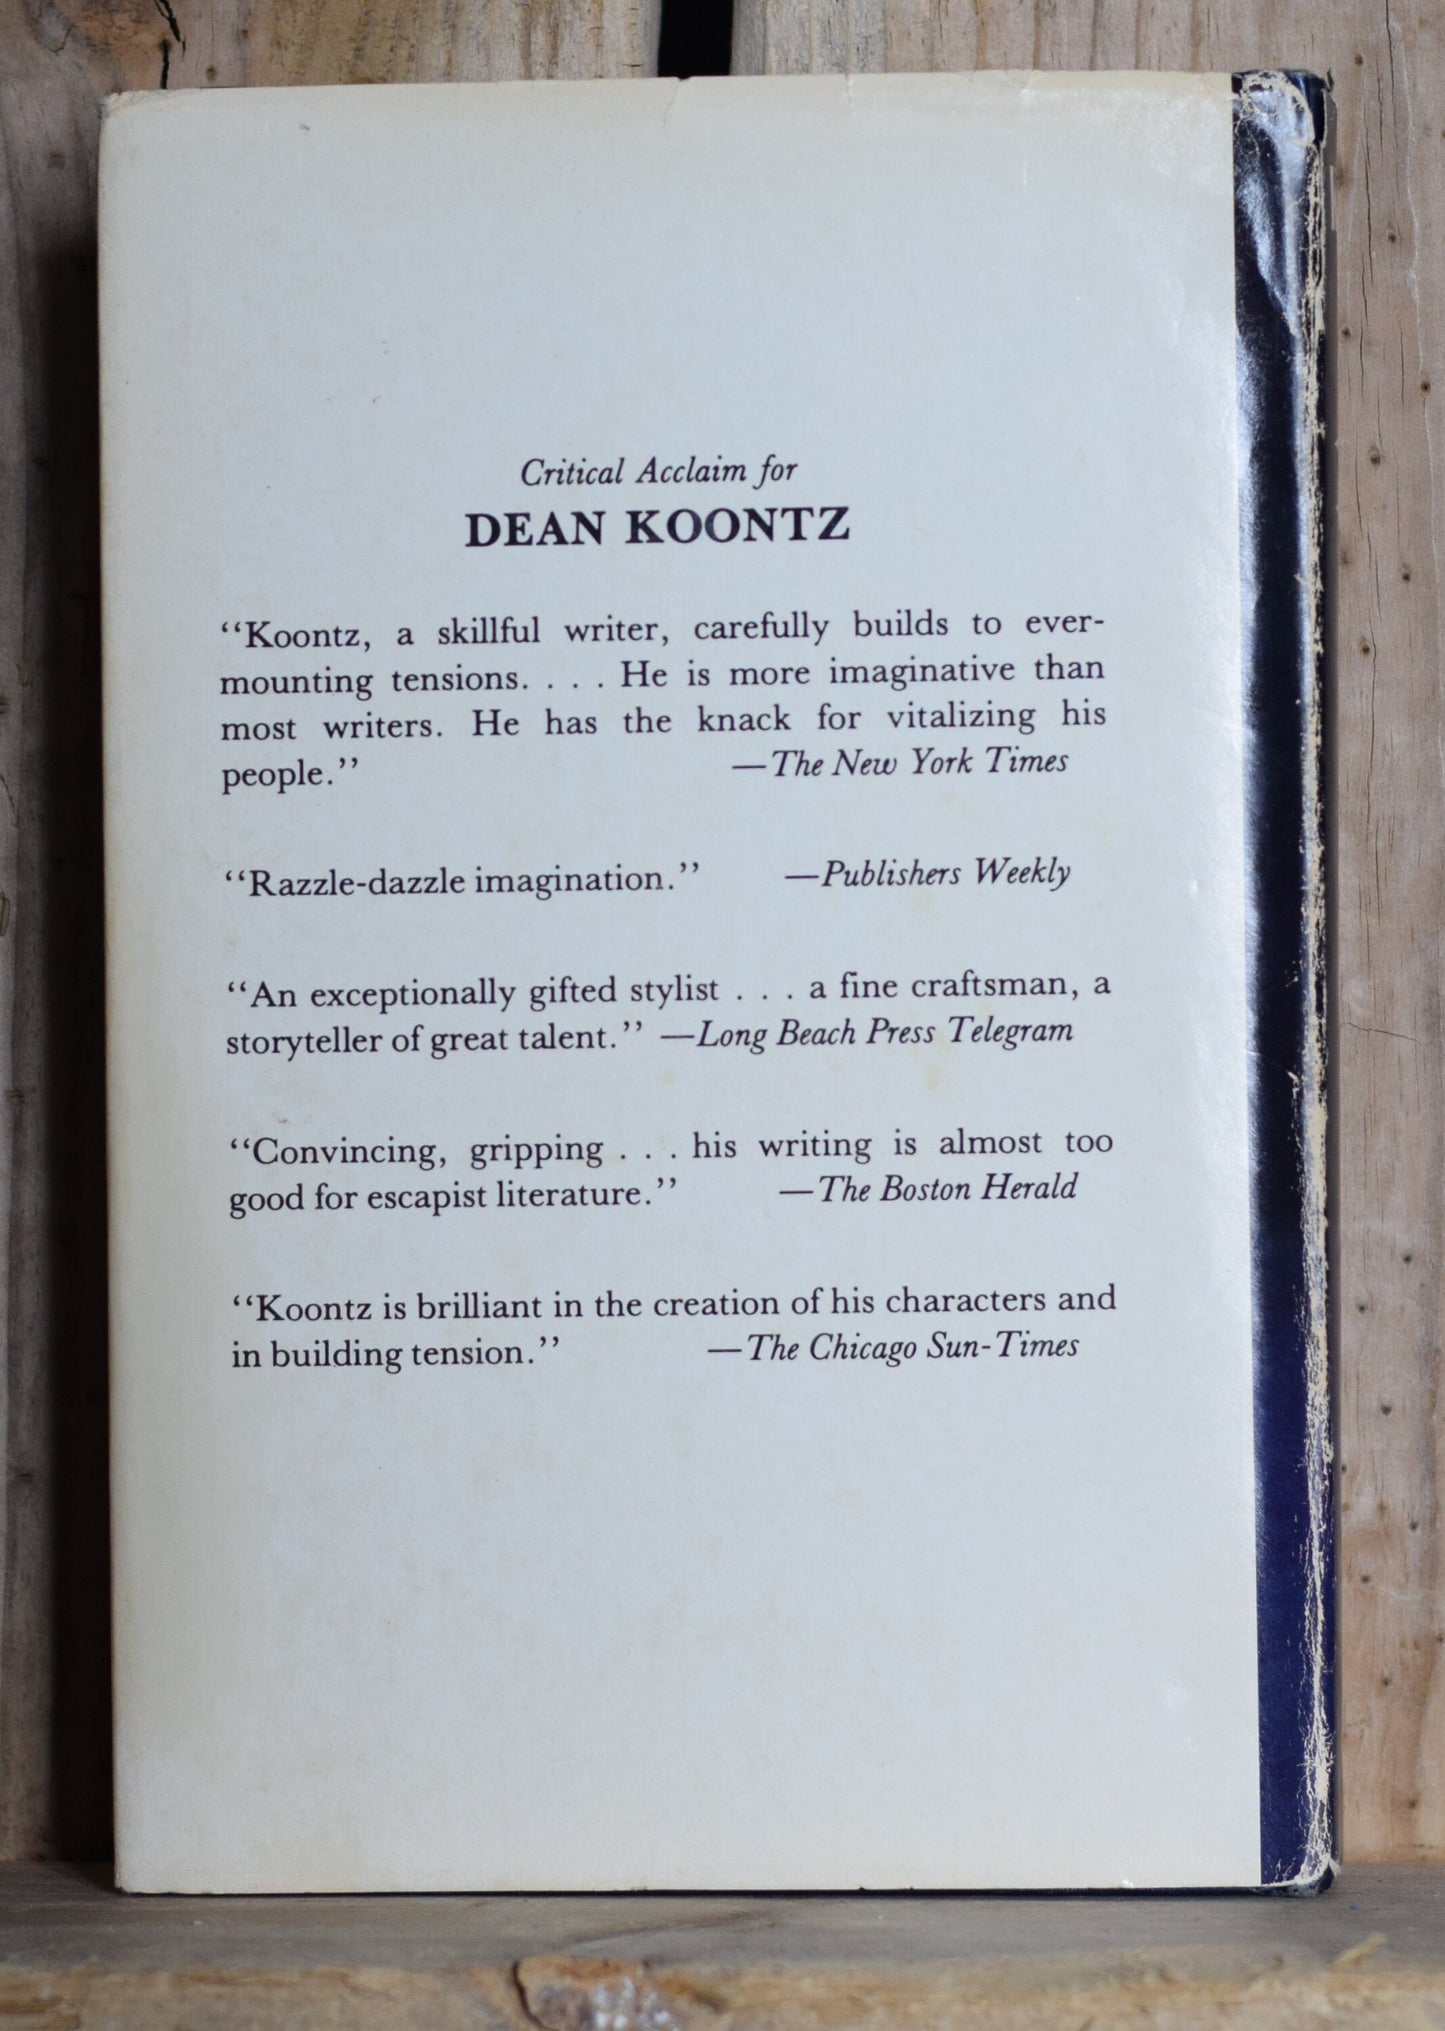 Vintage Fiction Hardback Novel: Dean R Koontz - Whispers